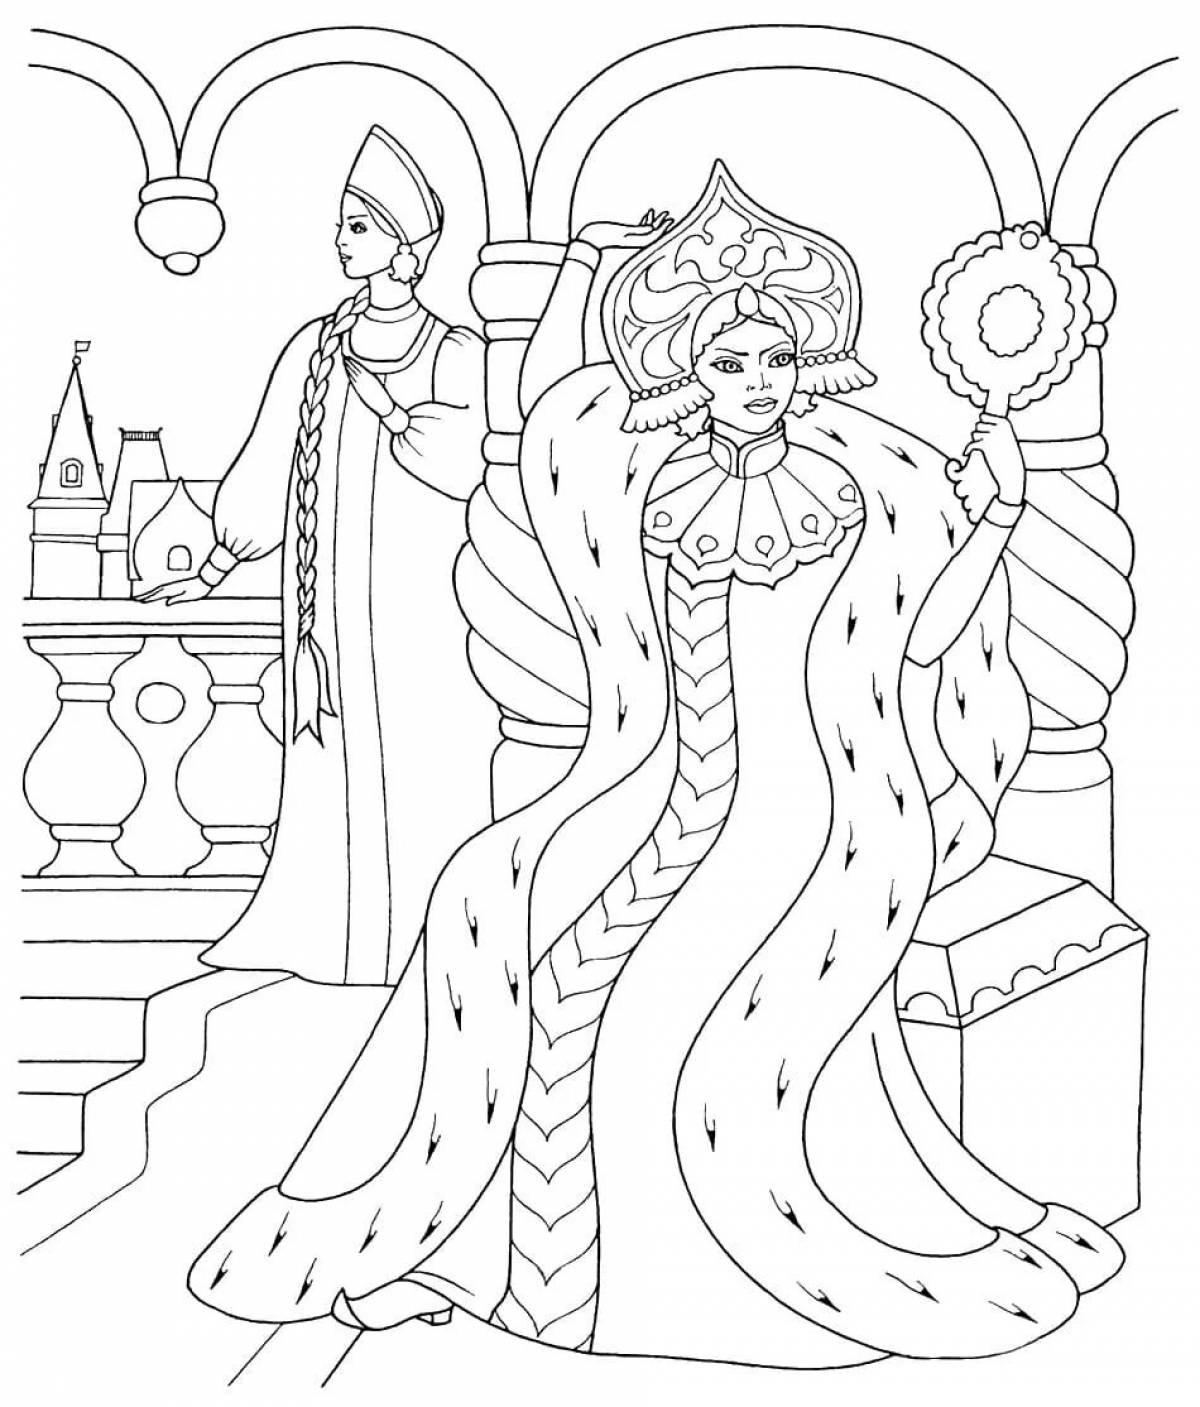 Exalted danya princess coloring book